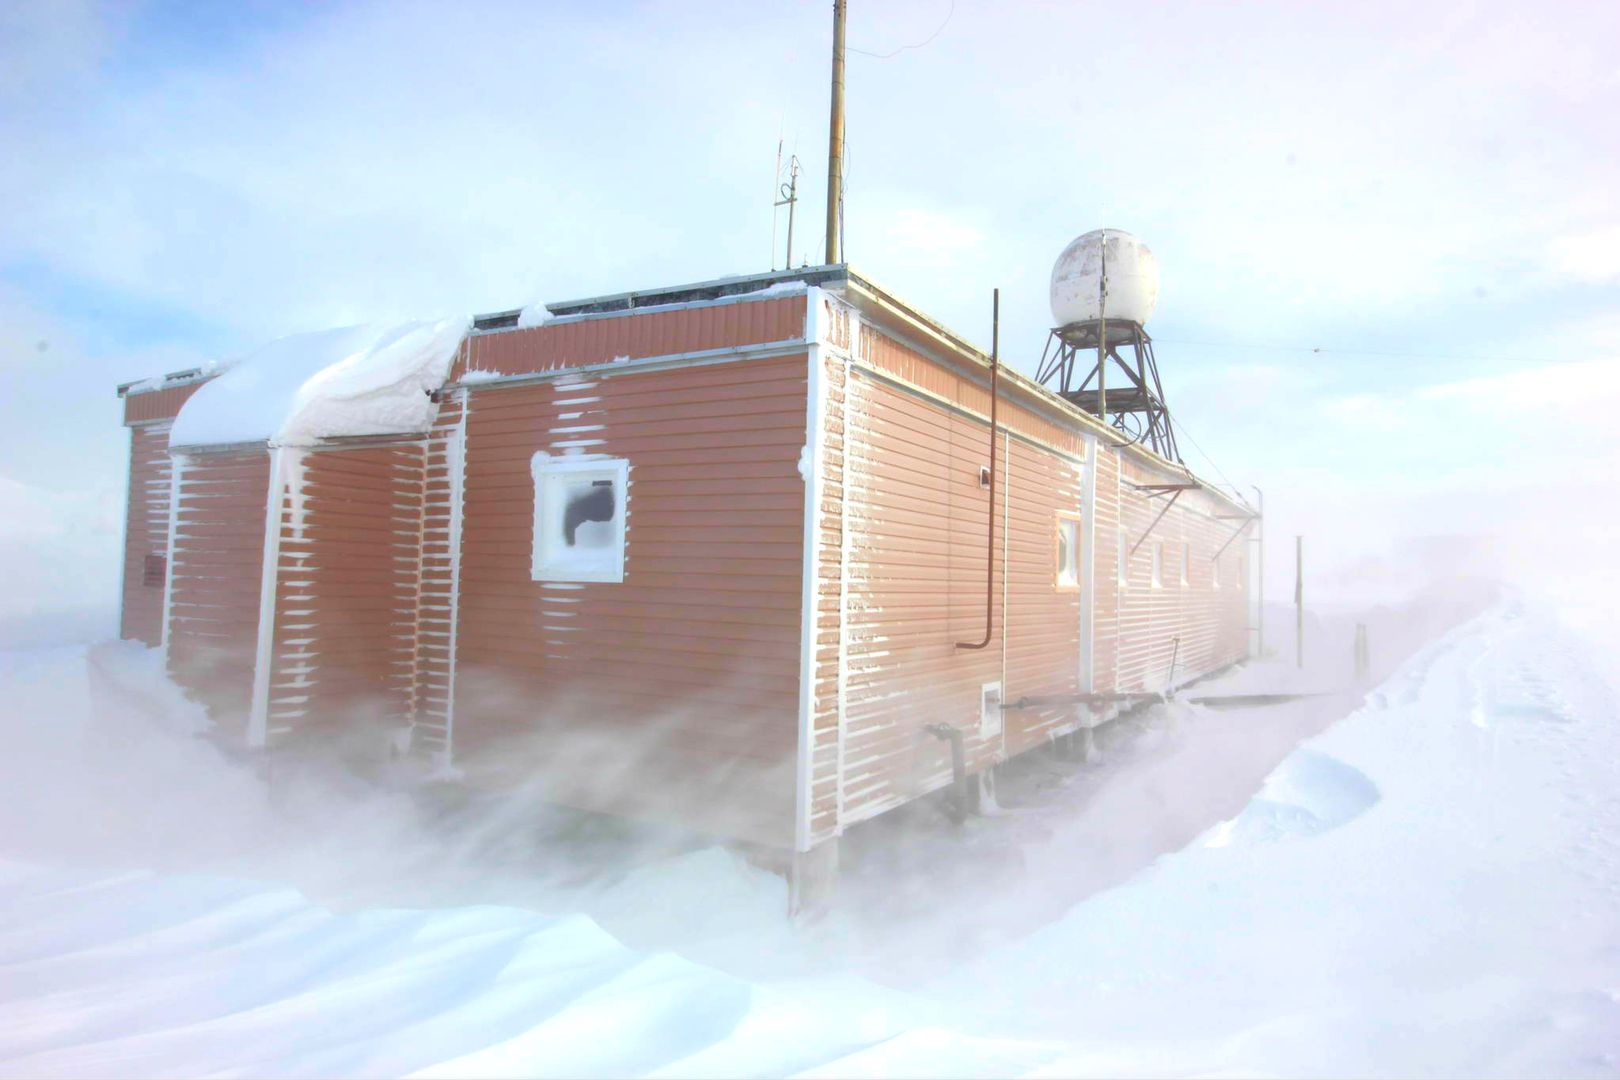 Dramat na Antarktydzie. Rosjanin oskarżony o próbę zabójstwa